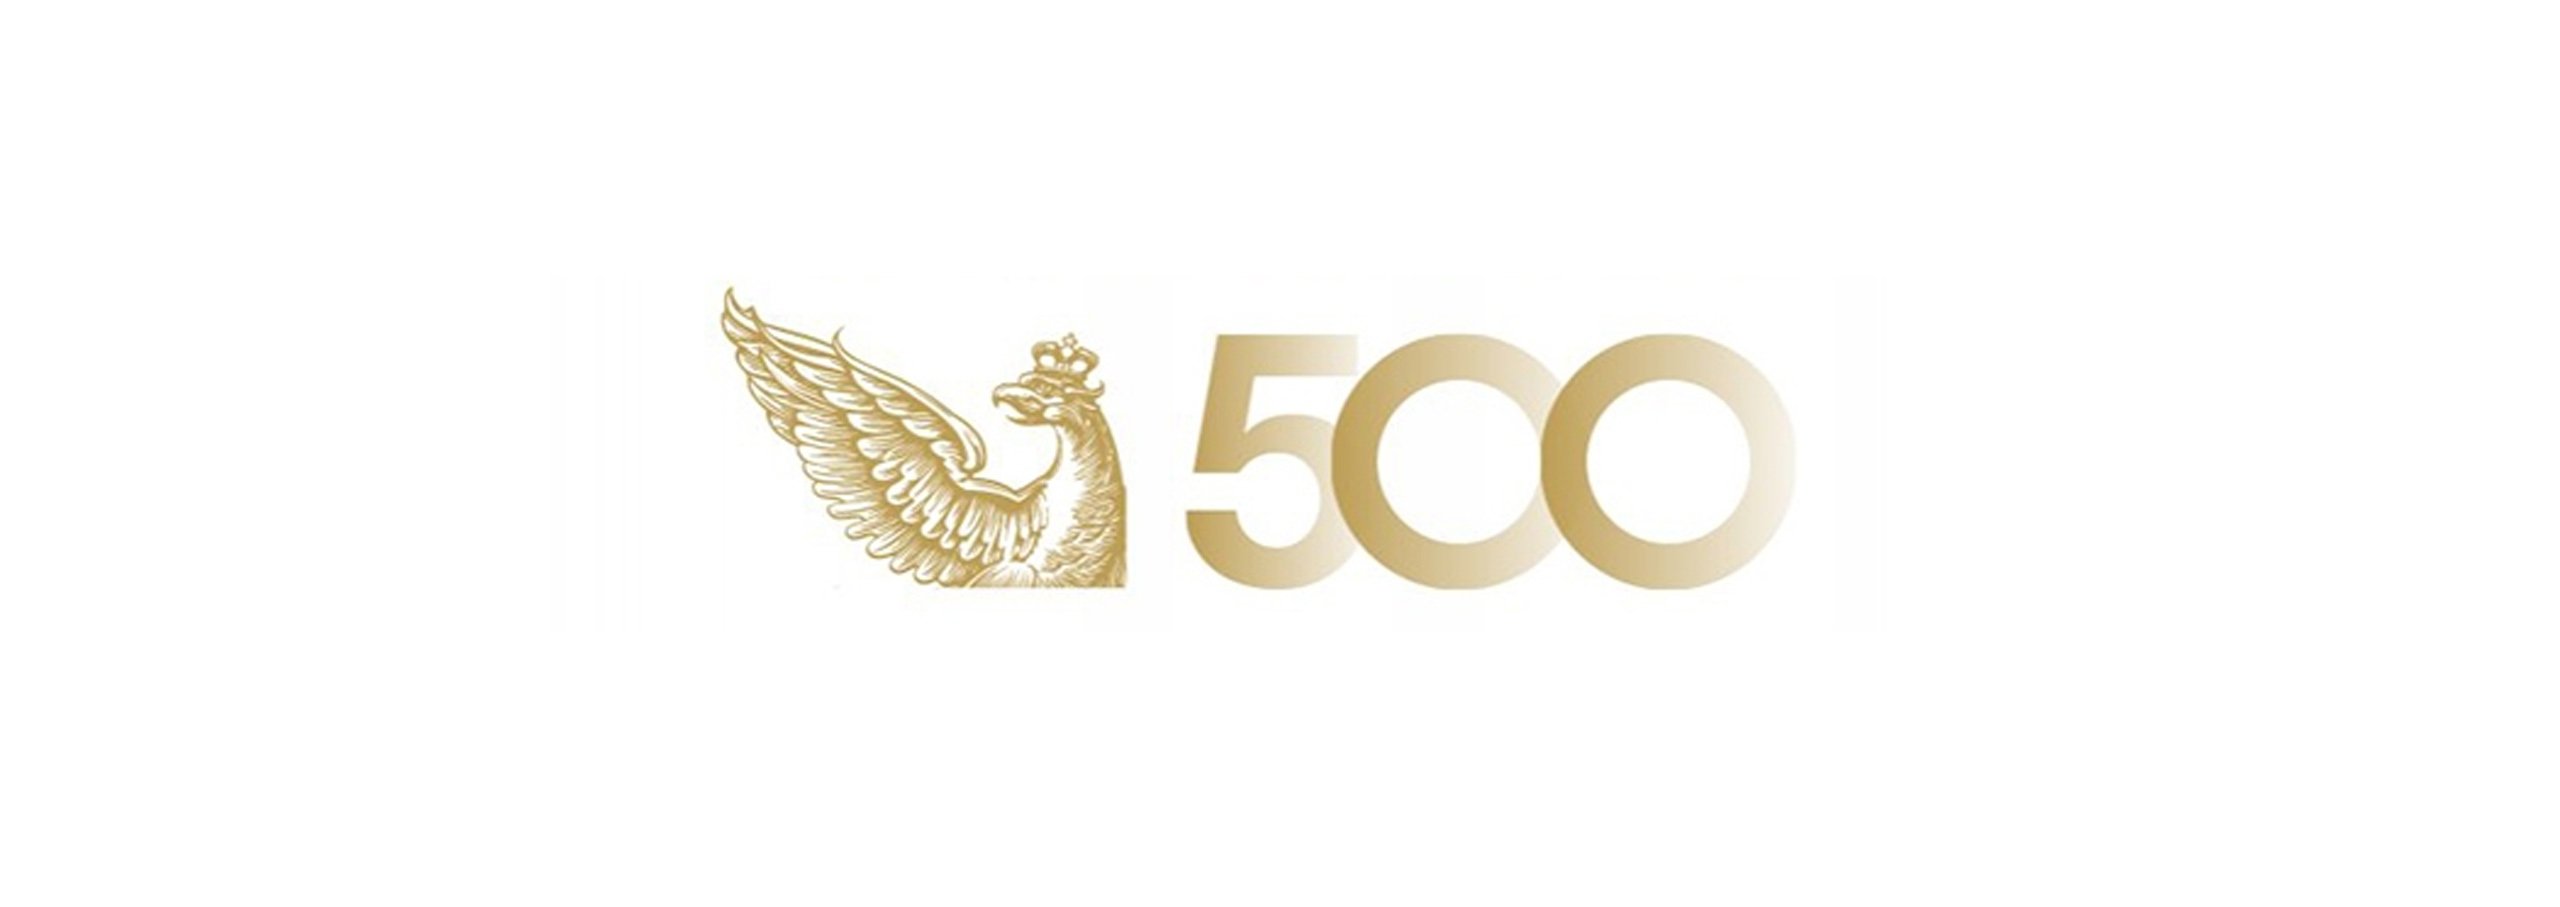 Drutex zum wiederholten Male in Rangliste der „Liste der 500“ der Tageszeitung Rzeczpospolita gestiegen